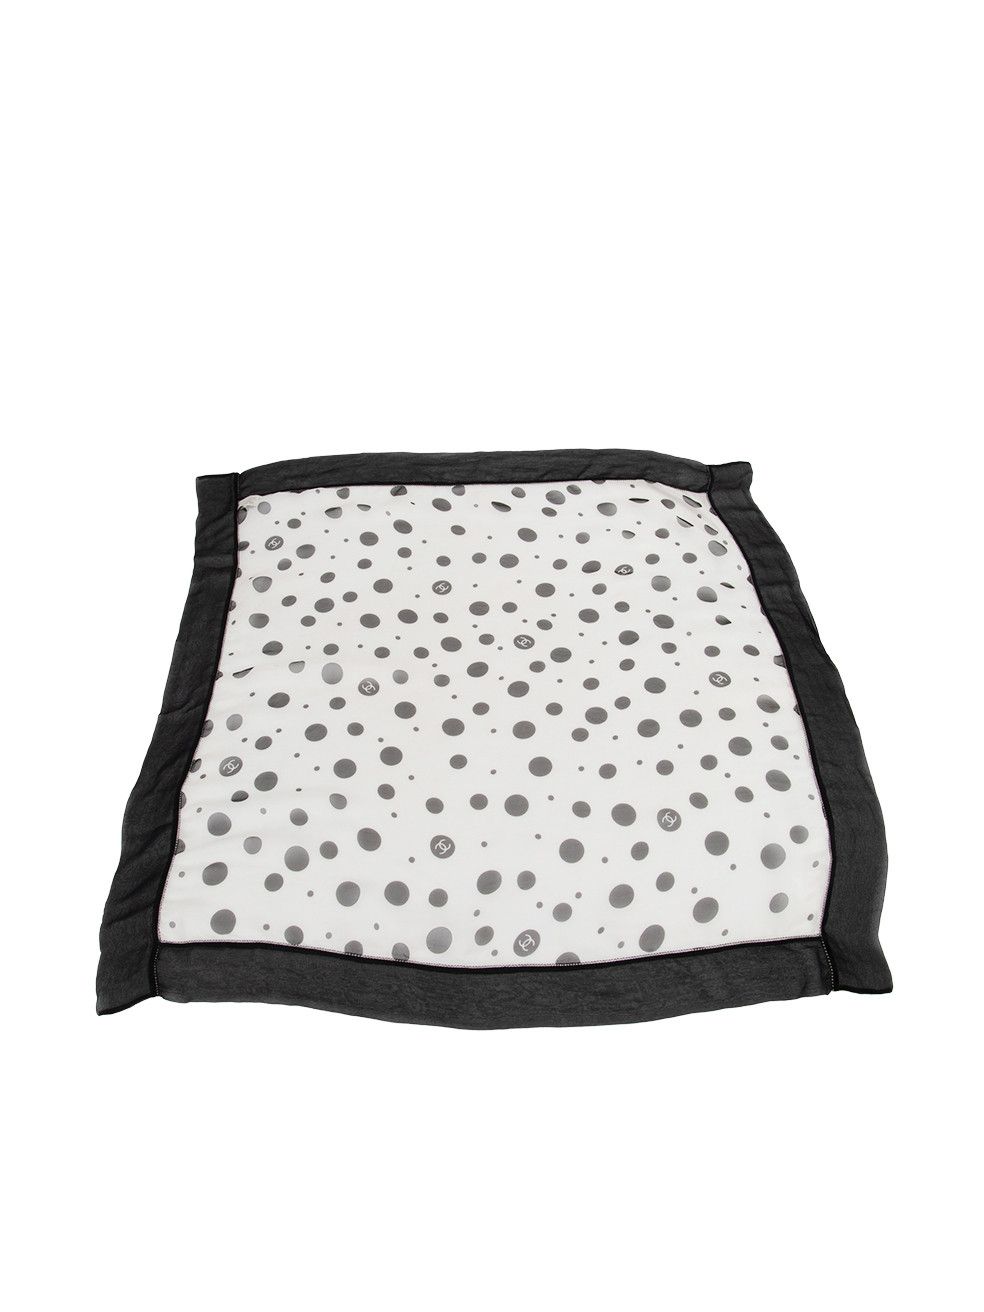 Chanel Black & White Silk Polka Dot CC Logo Scarf Size ONE SIZE - 1 Preview